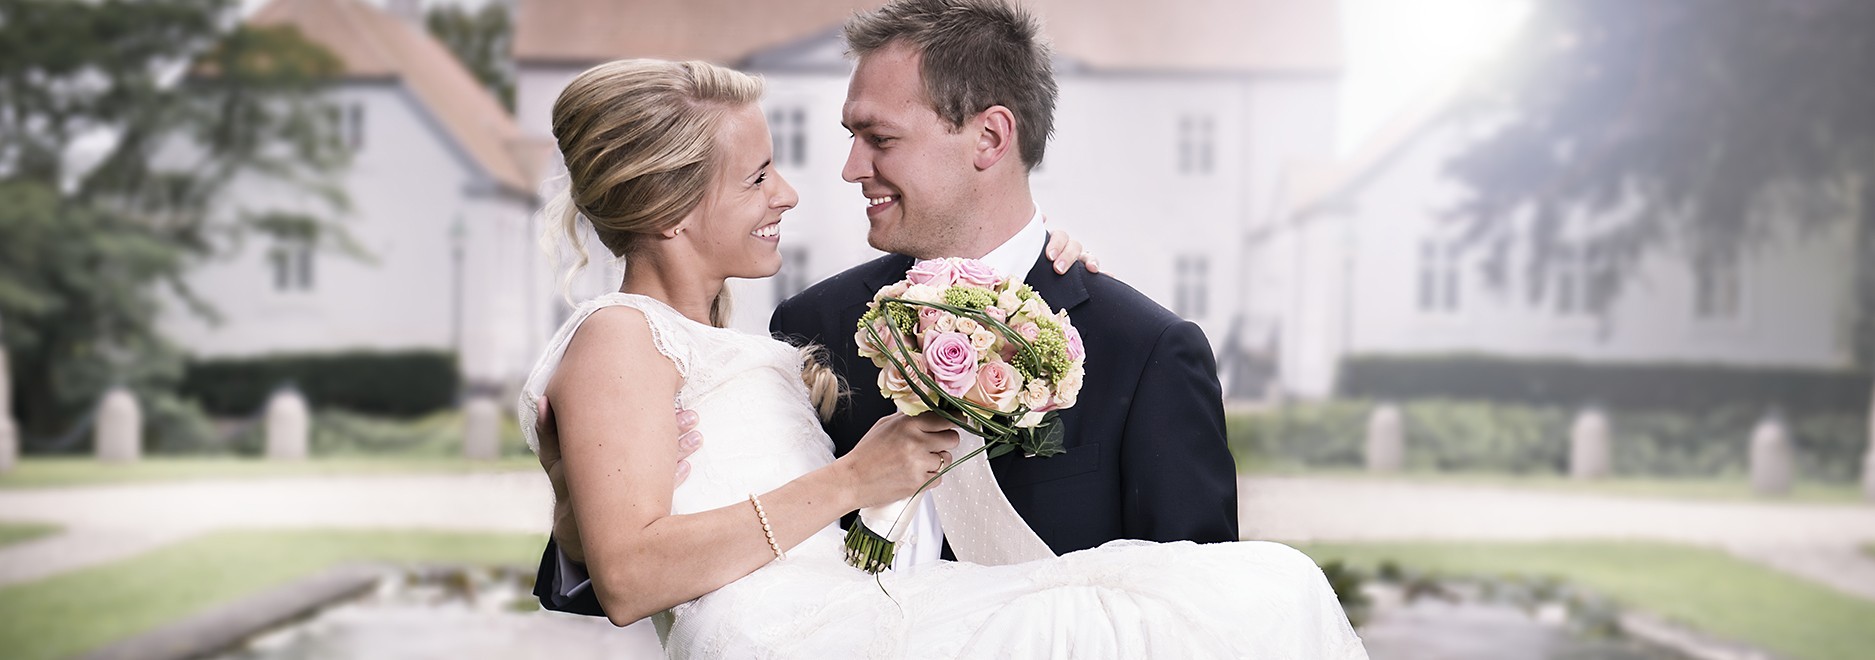 Bryllupsfotograf i Horsens – få taget jeres bryllupsbilleder af en professionel